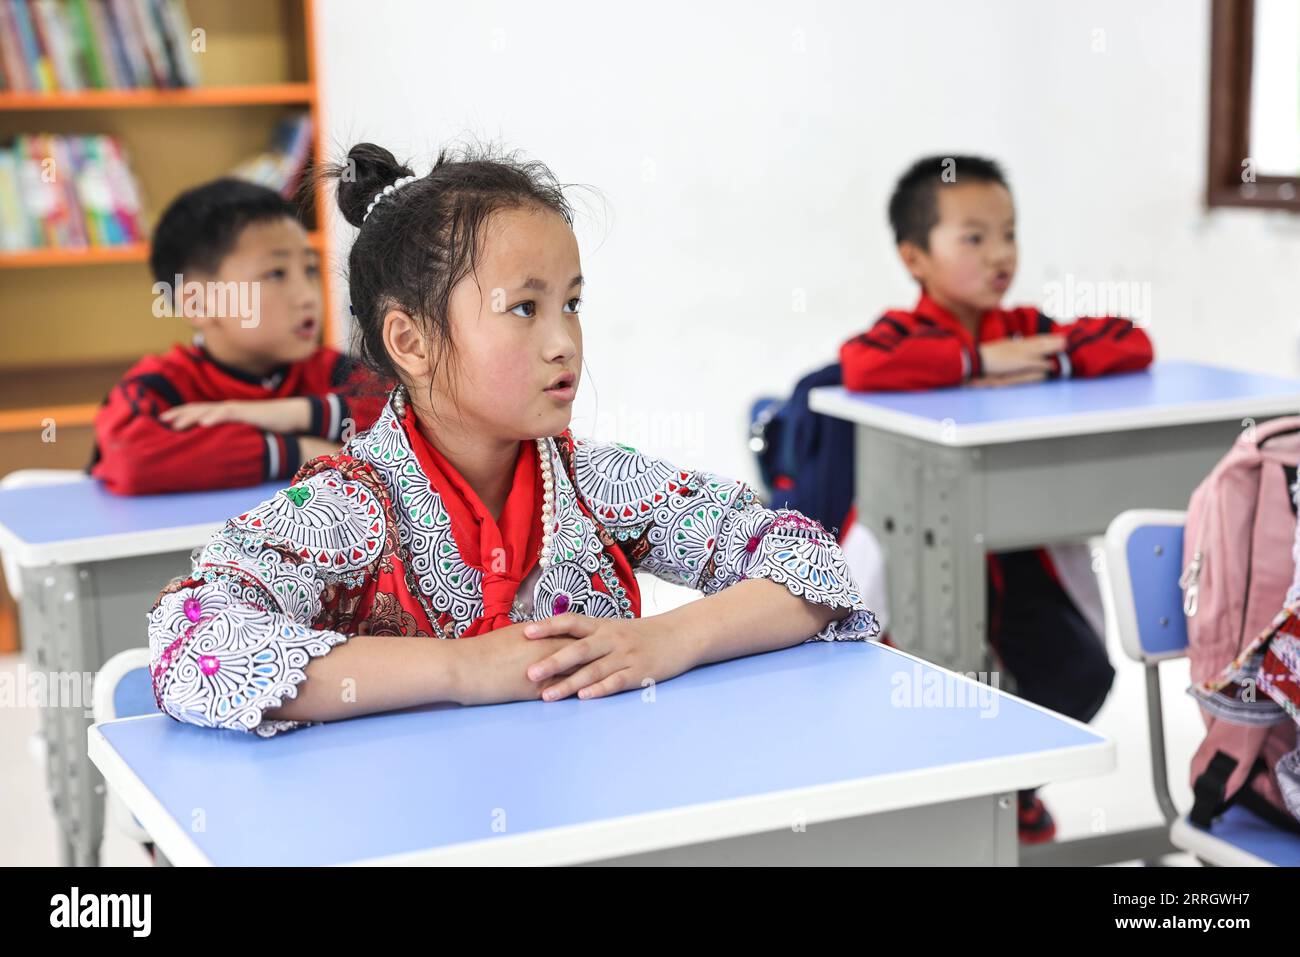 220601 -- GUIZHOU, le 1 juin 2022 -- Yang Yameng assiste à un cours avec ses camarades de classe dans une école primaire du village de Huawu, dans le canton de Xinren Miao, dans la ville de Qianxi, dans le sud-ouest de la province du Guizhou, le 1 juin 2022. Yang Yameng est un élève vivant dans le village de Huawu, dans la province du Guizhou du sud-ouest de la Chine. Sa ville natale était autrefois un village extrêmement pauvre. Ces dernières années, avec un ensemble de politiques de soutien, la pauvreté a été éliminée dans le village en stimulant les industries de culture et d'élevage ainsi que la promotion du tourisme, et les villageois ont déjà accès aux routes, à l'approvisionnement en eau, à l'électricité Banque D'Images